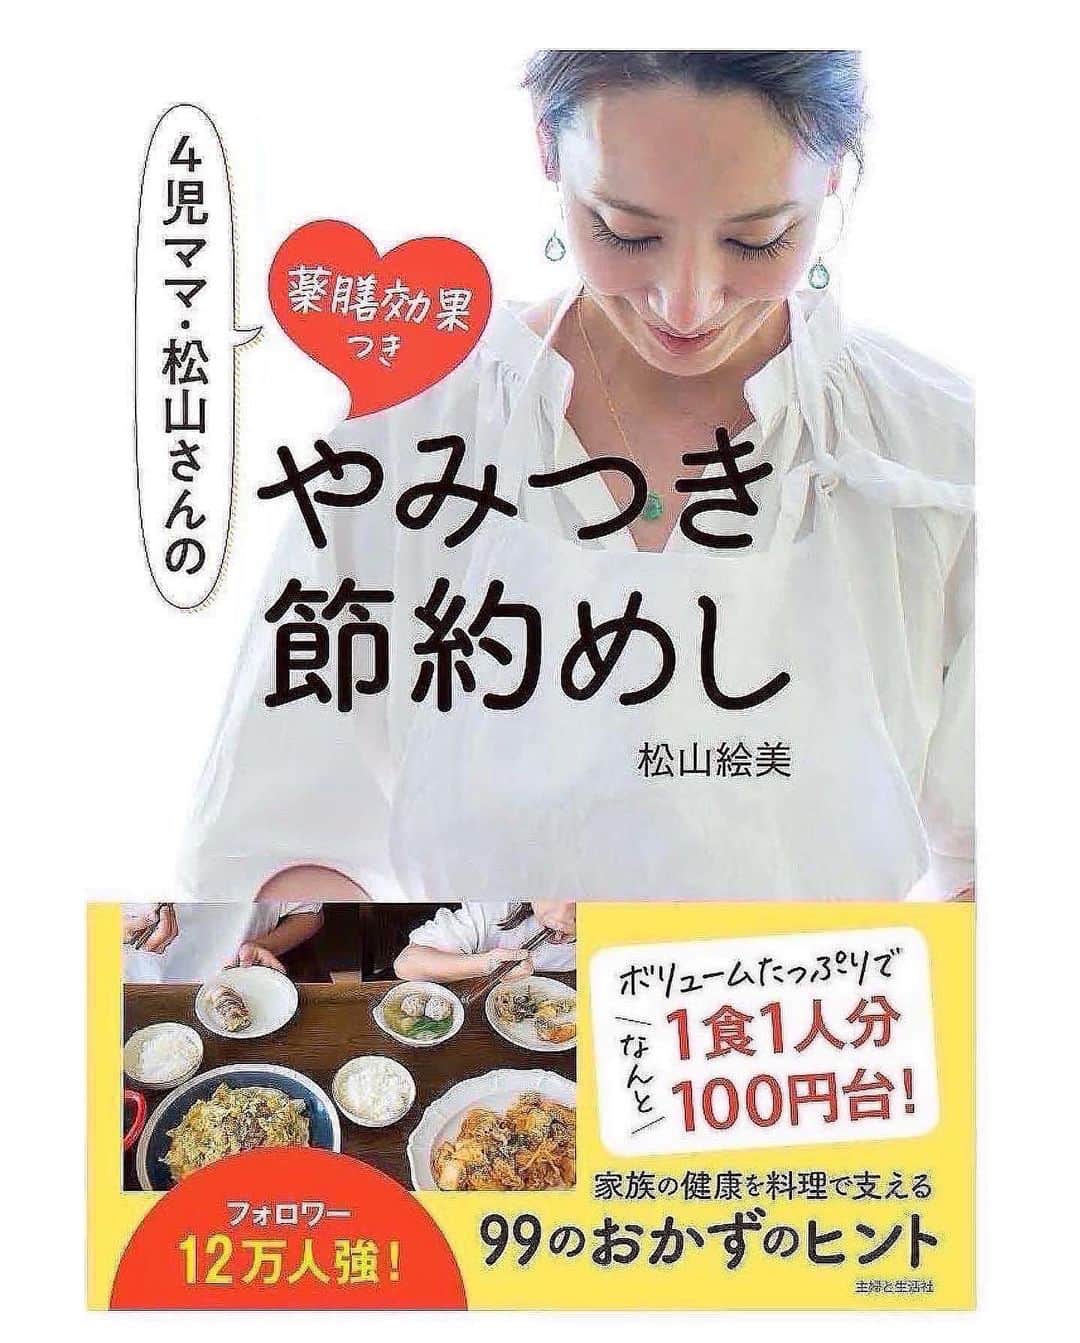 松山絵美さんのインスタグラム写真 - (松山絵美Instagram)「#レシピ有り　⁣ ※４人分・２人分の材料、作り方、薬膳効果は写真スワイプしてもご覧いただけます🙆🏻‍♀️⁣ ⁣ ⁣ 《プルナック(牛肉とたこ炒め)【夏の疲れに♪】》⁣ ⁣ ⁣ ⁣ 牛肉とたこを炒める韓国料理です✨⁣ 本来は生の手長たこを使いますが日本のスーパーで手に入る茹でたこで作りました🐙✨⁣ タウリンたっぷりなタコの旨味と牛肉の旨味がギュッと詰まって疲れも吹き飛びます👍✨⁣ ⁣ ⁣ 薬膳効果⁣ ☆牛肉...骨や筋肉の強化、食欲不振、虚弱体質、無気力に⁣ ⁣ ☆タコ...高血圧に、血栓予防に、足腰の老化に。⁣ ⁣ ☆たまねぎ…滋養強壮に、血の滞りを解消、新陳代謝を促進、疲労回復に、生活習慣病予防に⁣ ⁣ ☆しめじ...肌荒れに、便秘に、貧血に、高血圧に⁣ ⁣ ☆にんにく...腫れものの改善に、風邪予防に、解毒に、疲労回復に、脳の活性に、動脈硬化予防に、血糖値の改善に⁣ ⁣ ⁣ ⁣ （調理時間：15分)⁣ -------------------⁣ 【材料4人分】(２人分の分量は写真４枚目をご覧ください)⁣ -------------------⁣ 牛こま切れ肉:240g⁣ ⁣ 茹でだこ:240g⁣ ⁣ 玉ねぎ:1/2個・正味120g⁣ ⁣ しめじ:小1パック・正味100g⁣ ⁣ 韓国春雨:60～80g⁣ ⁣ (A)醬油:大さじ2⁣ (A)砂糖:小さじ4⁣ (A)にんにくすりおろし・コチュジャン:各大さじ1⁣ (A)鶏がらスープの素:小さじ1⁣ ⁣ 醬油:小さじ2～3⁣ ⁣ ごま油:大さじ1⁣ ⁣ 青ネギの小口切り・白いりごま:お好みで⁣ -------------------⁣ -------------------⁣ 【下準備】牛こま切れ肉は【A】を揉み込む。⁣ ⁣ 玉ねぎは繊維に沿って5㎜位に切る。⁣ ⁣ しめじは小房に分ける。⁣ ⁣ 茹でだこは食べやすく切る。⁣ ⁣ 韓国春雨は袋の表示より1分短く茹でて水気を切る。⁣ ⁣ ⁣ ⁣ 【1】フライパンにごま油を熱し、玉ねぎを炒める。⁣ ⁣ ⁣ ⁣ 【2】少し透き通って来たら、牛肉、たこ、しめじも加えて炒める。⁣ ⁣ ⁣ ⁣ 【3】全体に火が通ったら韓国春雨と醬油を加えて炒め合わせ出来上がり！⁣ 器に盛り、お好みで青ネギの小口切り・白いりごまを乗せる。⁣ ⁣ ⁣ ⁣ ⁣ ⁣ ⁣ Nadiaレシピ🆔 465248⁣ レシピサイトNadiaの検索バーにレシピ🆔番号を入力してみてください⁣ https://oceans-nadia.com/⁣ ⁣ ⁣ ⁣ ⁣ ✩✩✩✩✩✩《お知らせ》✩✩✩✩✩✩⁣ 『4児ママ・松山さんの薬膳効果つき やみつき節約めし』重版が決定しました🥹✨✨⁣ ⁡⁣ ⁡⁣ 本書では1食1人分のおかずが100円台に収まるレシピをご紹介しています✨⁣ また「やる気のないときほど開きたい料理本」をめざして、簡単な調理法にもこだわりました。長くレパートリーに加えていただけるメニューが見つかれば、うれしいです🥹⁣ ⁡⁣ Amazon⁣ https://www.amazon.co.jp/dp/4391155567/⁣ ⁡⁣ 楽天ブックス⁣ https://books.rakuten.co.jp/rb/16605719/⁣ ⁡⁣ ⁡⁣ ⁡⁣ ⁡⁣ 《松山絵美のカンタンなことしかやらないレシピ》⁣ 増刷致しました🙇‍♀️✨⁣ ⁡⁣ ⁡⁣ 【手間は省いて愛情込める】をモットーに、⁣ めんどうなことを「やらない」レシピたち。 ラクして作れるのに見映えもよくて、家族もパクパク食べてくれる！⁣ そんなレシピを100品と、調味料のご紹介や、お気に入りキッチンまわりアイテムのご紹介。私の1day ルーティーン。⁣ 薬膳アドバイスなど、コラムページもたくさんです🙌✨　　⁣ ⁡⁣ ヒルナンデスでもご紹介されました✨⁣ ⁡⁣ ⁡⁣ 《松山絵美のカンタンなことしかやらないレシピ》⁣ ⁡⁣ Amazon⁣ https://www.amazon.co.jp/dp/4651201350/⁣ 楽天ブックス⁣ https://books.rakuten.co.jp/rb/16974637/?l-id=search-c-item-text-03⁣ ⁡⁣ またストーリーズ、ハイライト【新刊やらないレシピ】からどうぞ🙇‍♀️⁣ ⁡⁣ ⁡⁣ ⁡⁣ ⁡⁣ ＊＊＊＊＊＊＊＊＊＊＊＊＊＊＊＊＊＊＊＊＊＊＊⁣ ⁡⁣ #ネクストフーディスト　	⁣ #Nadia⁣ #NadiaArtist⁣ #Nadiaレシピ⁣ #フーディーテーブル⁣ #レシピ⁣ #やみつきレシピ⁣ #簡単レシピ⁣ #節約レシピ⁣ #時短レシピ⁣ #今日もハナマルごはん⁣ #おうちごはんlover⁣ #おうちごはん革命⁣ #やみつき節約めし	⁣ #松山絵美のカンタンなことしかやらないレシピ⁣ #やらないレシピ⁣ #recipe⁣ #cooking⁣ #japanesefood⁣ #Koreanfood⁣ #レシピあり⁣ #レシピ付き⁣ #料理好きな人と繋がりたい⁣ #韓国料理⁣ #韓国料理レシピ⁣ #松山家の韓国料理⁣ #プルナック⁣ ⁣」7月26日 16時28分 - emi.sake